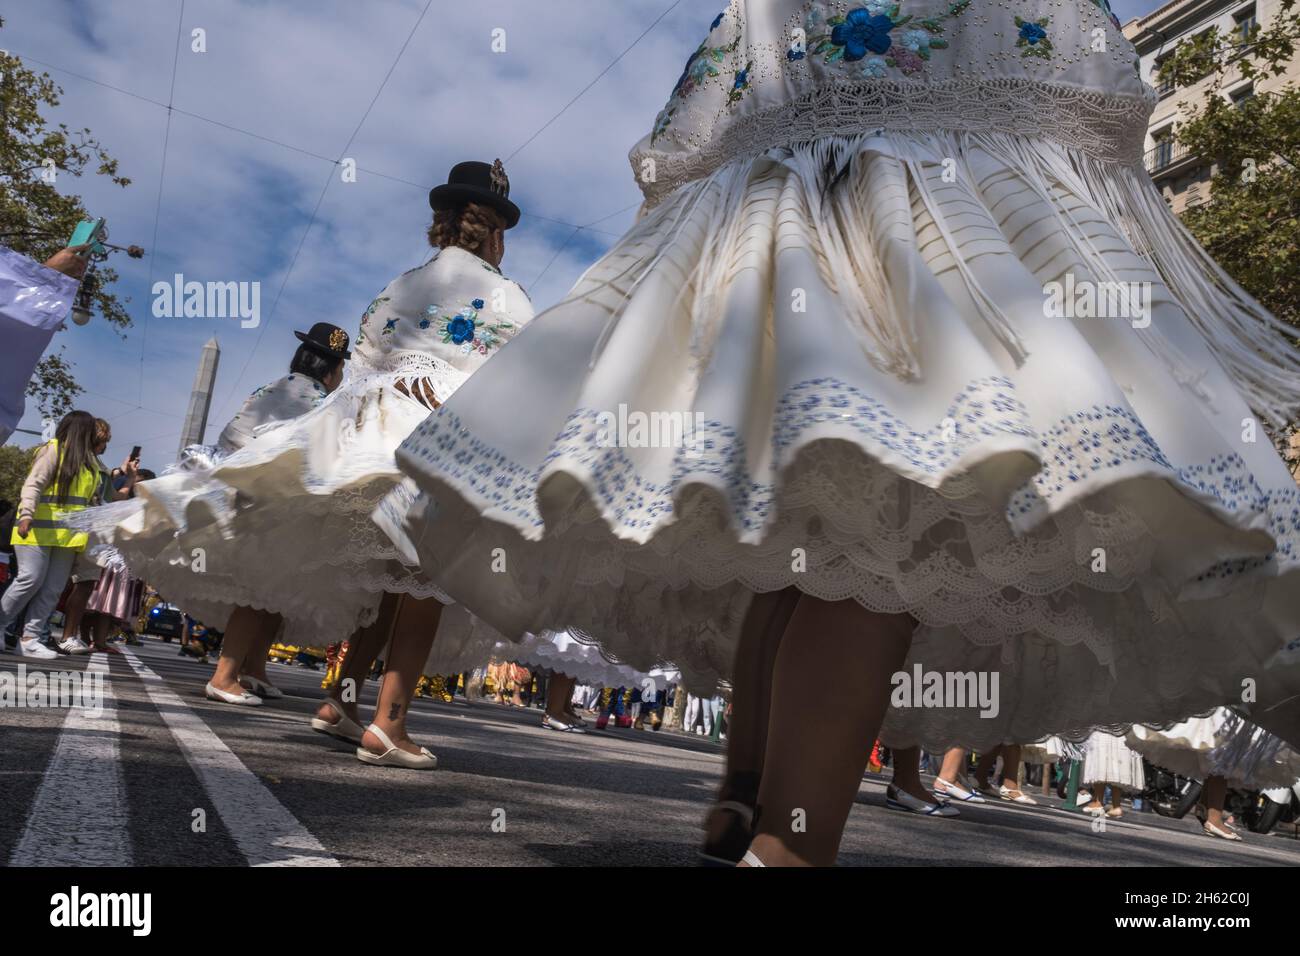 Nahaufnahme in Bewegung aus dem niedrigen Blickwinkel einer Performance einer weiblichen Gruppe bolivianischer Tänzer, die ihre traditionellen Hüte und Kostüme mit Wid tragen Stockfoto